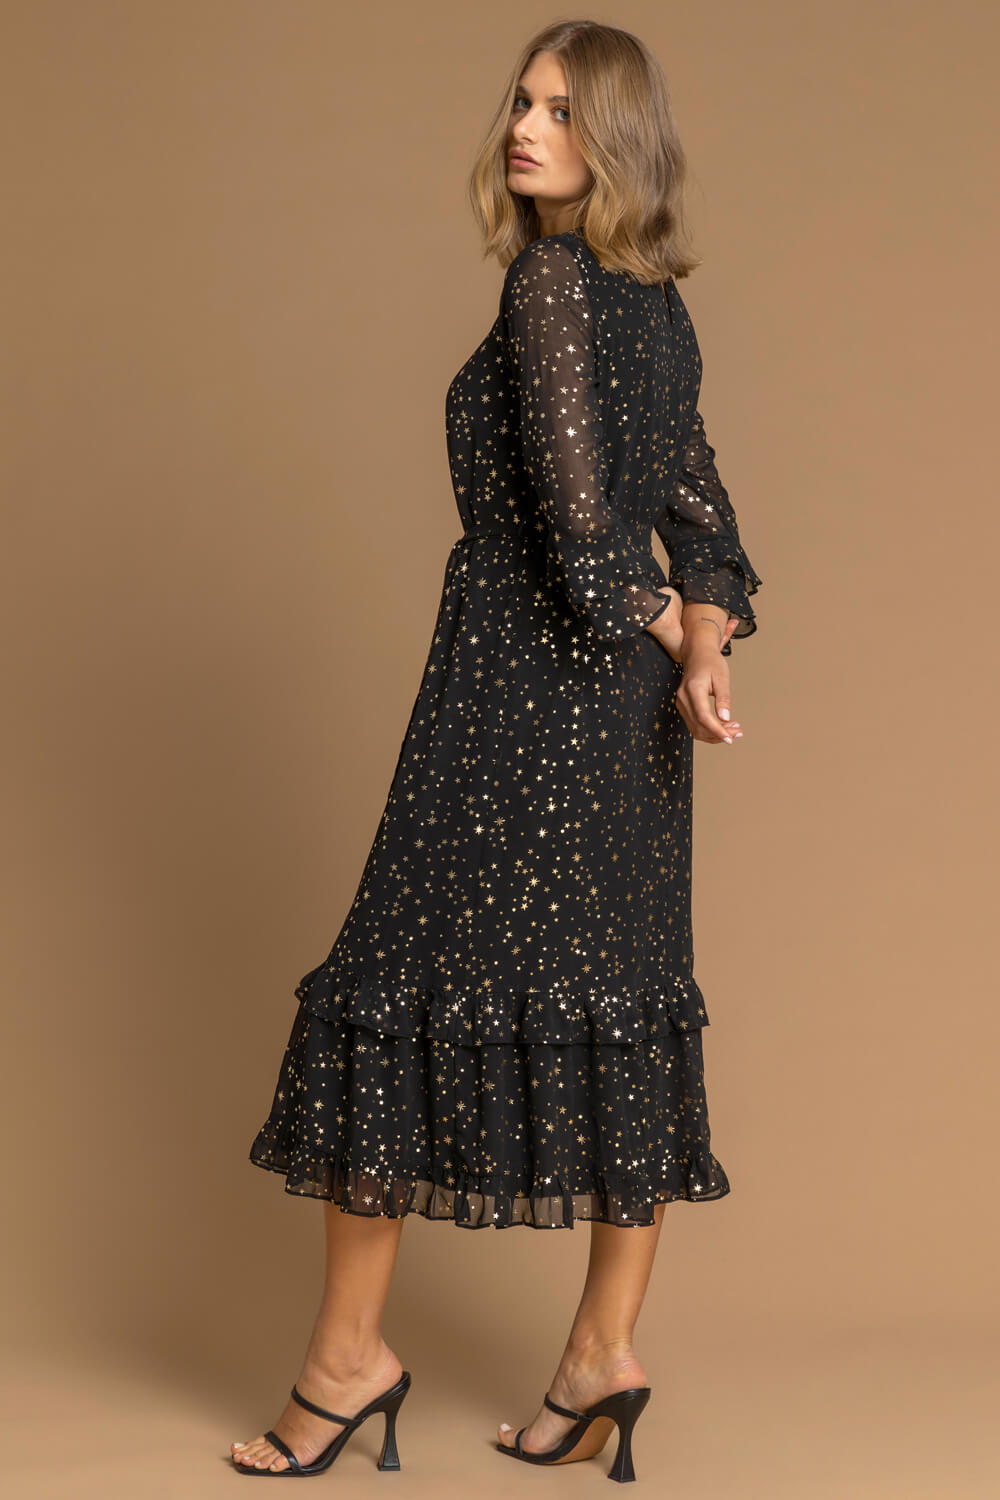 Star Foil Print Frill Dress in Black - Roman Originals UK